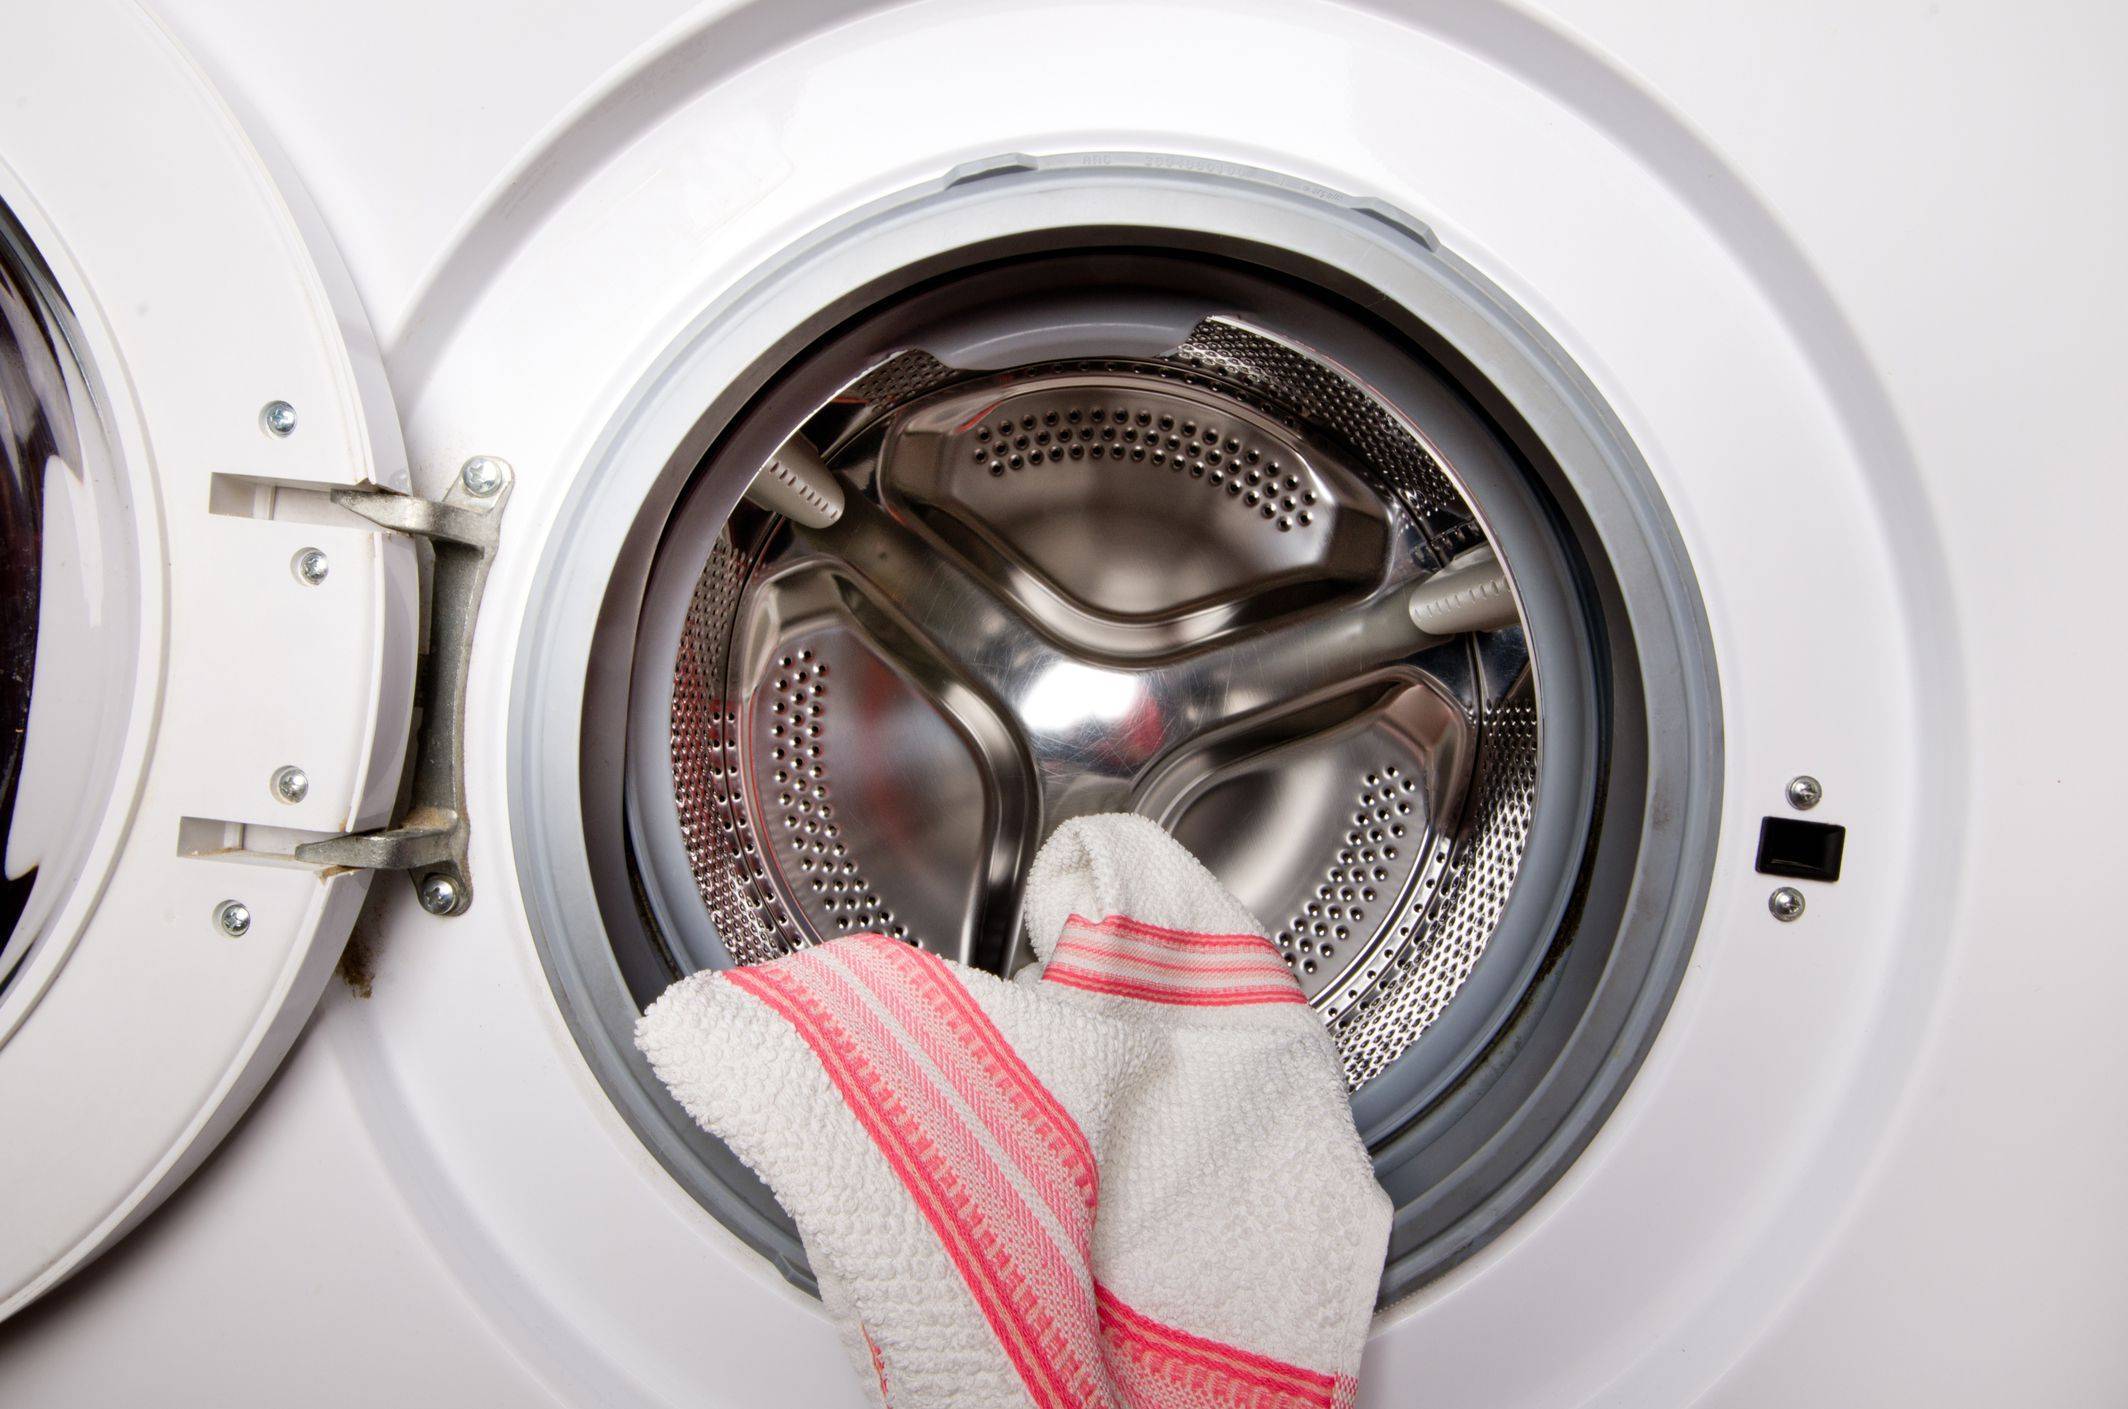 Как удалить накипь в стиральной машине-автомат в домашних условиях, чем отмыть отсек для порошка, как убрать с тэна, шланга, фильтра?